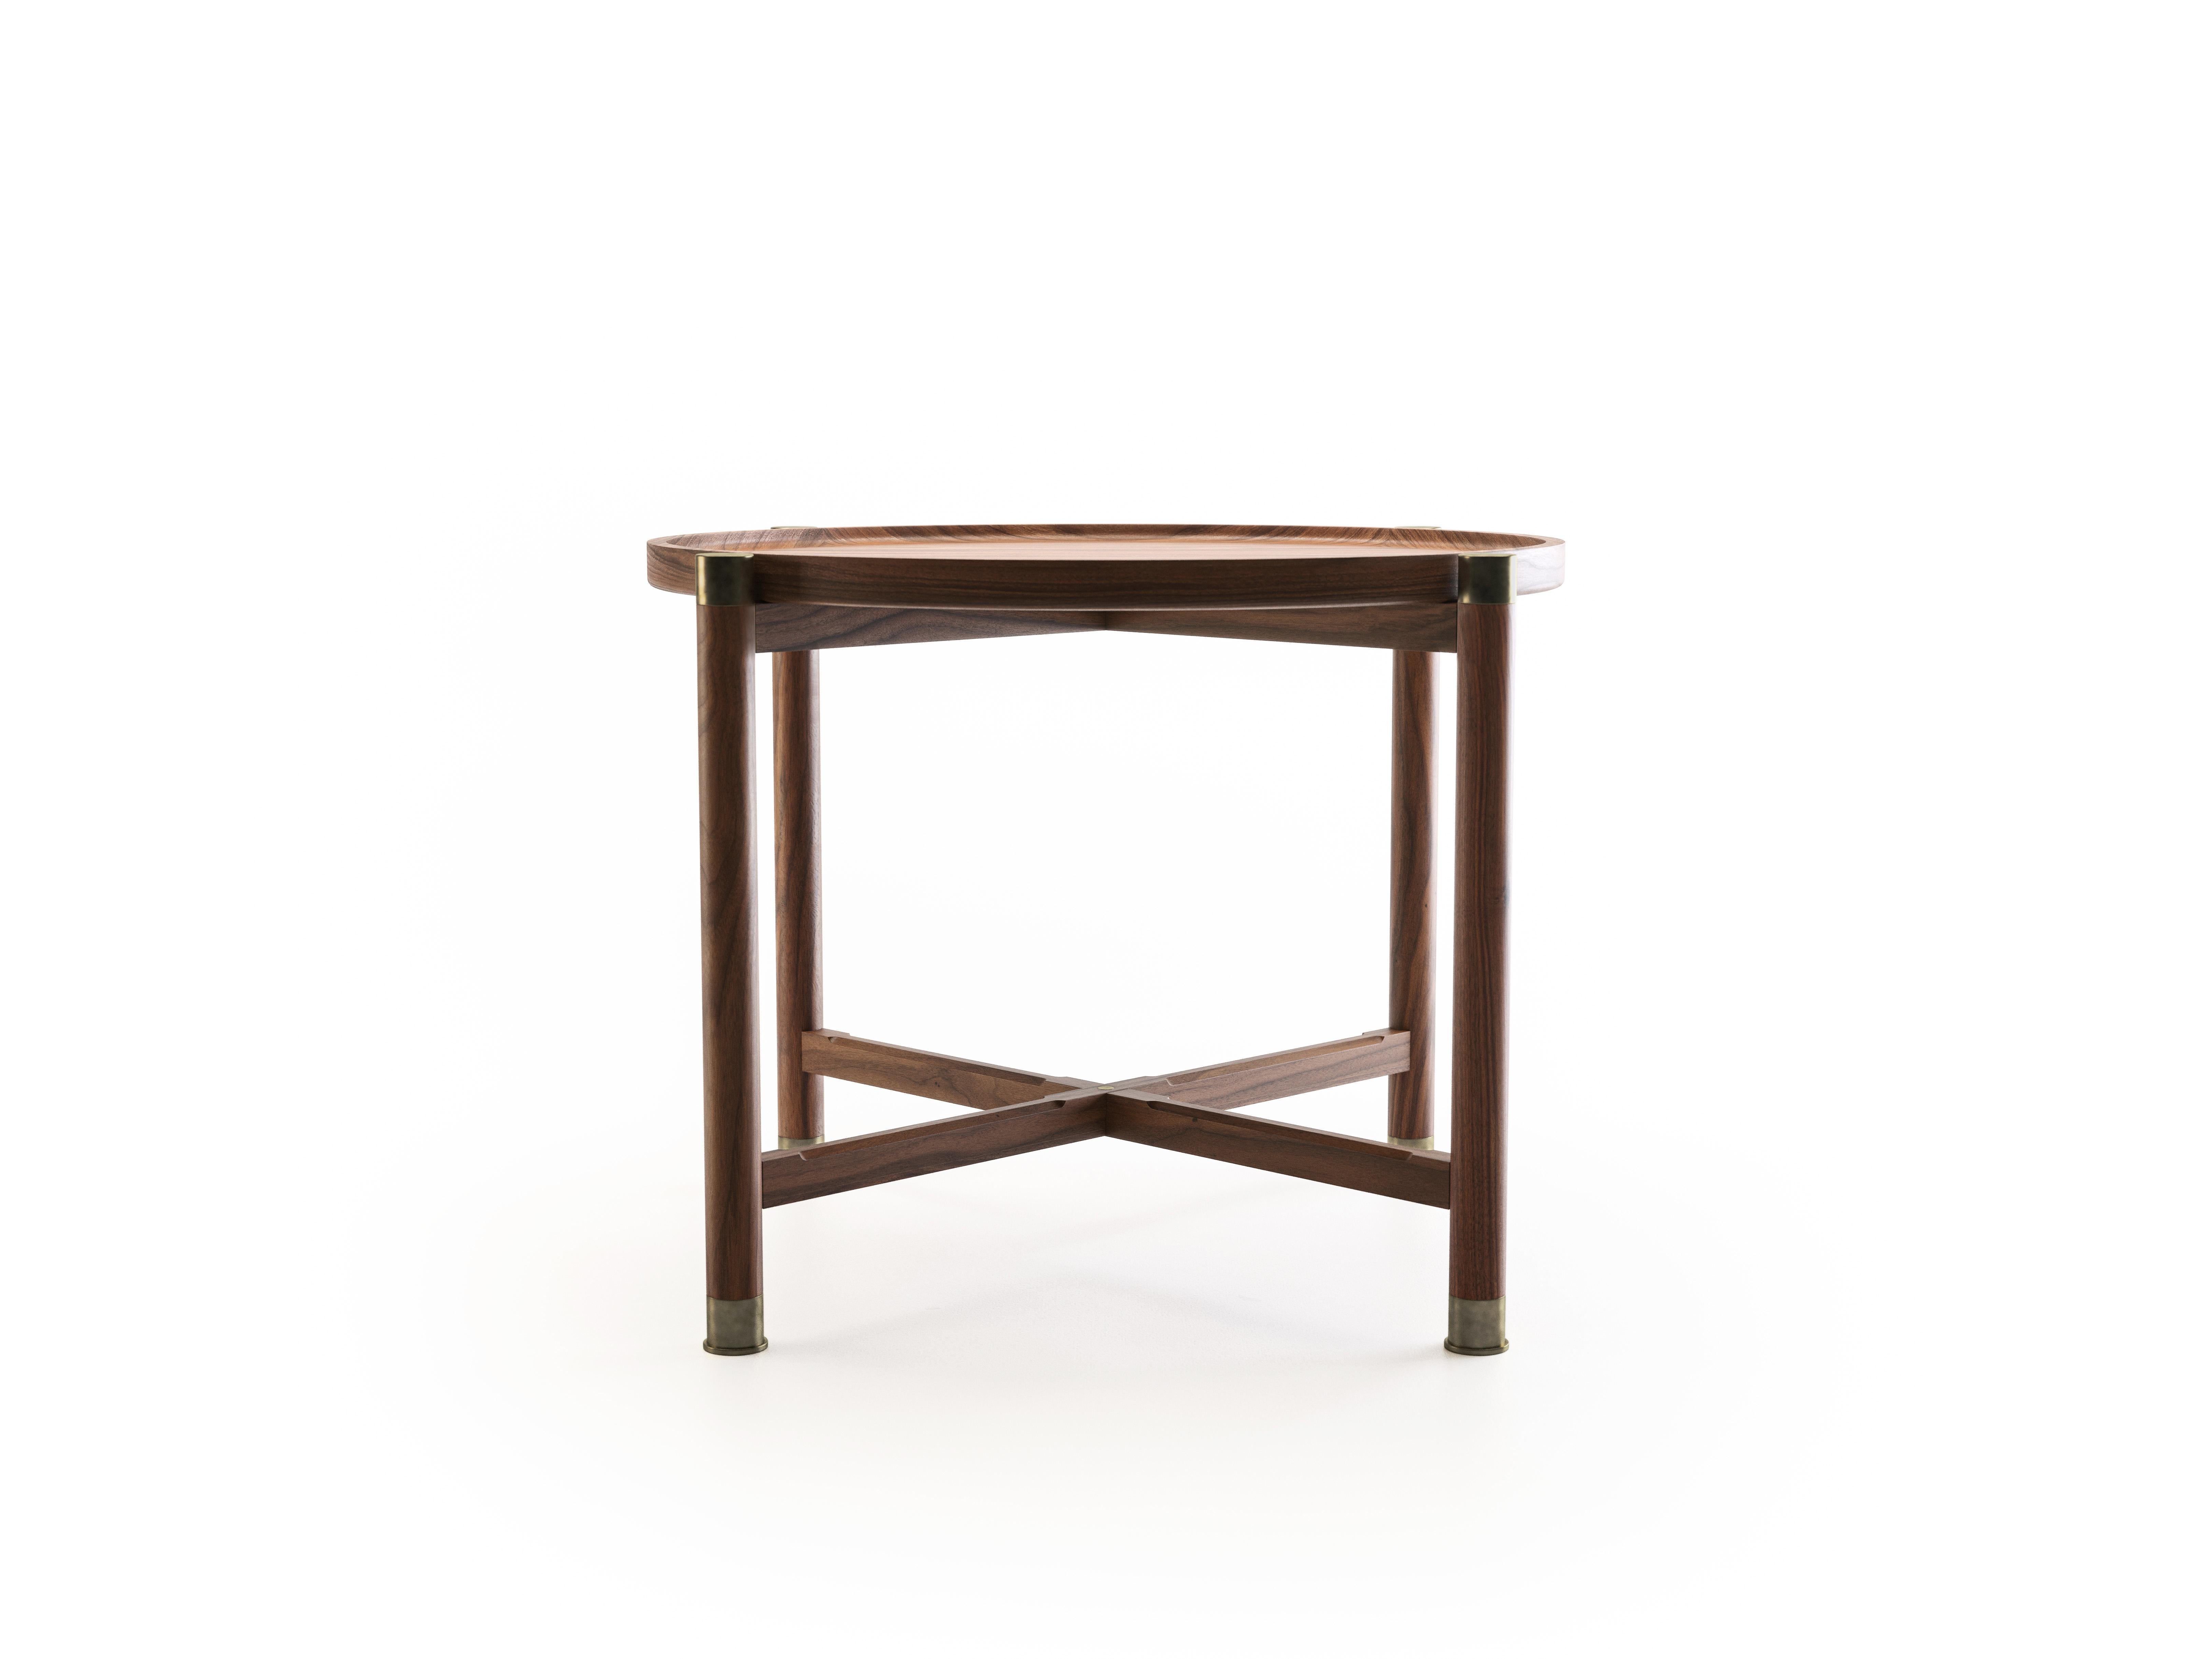 La table d'appoint Otto est une table aux proportions généreuses et à la forme simple et bien articulée.
Disponible en noyer ou en chêne, il est doté d'un plateau de coupe rond, d'importantes ferrures en laiton antique et d'élégantes traverses